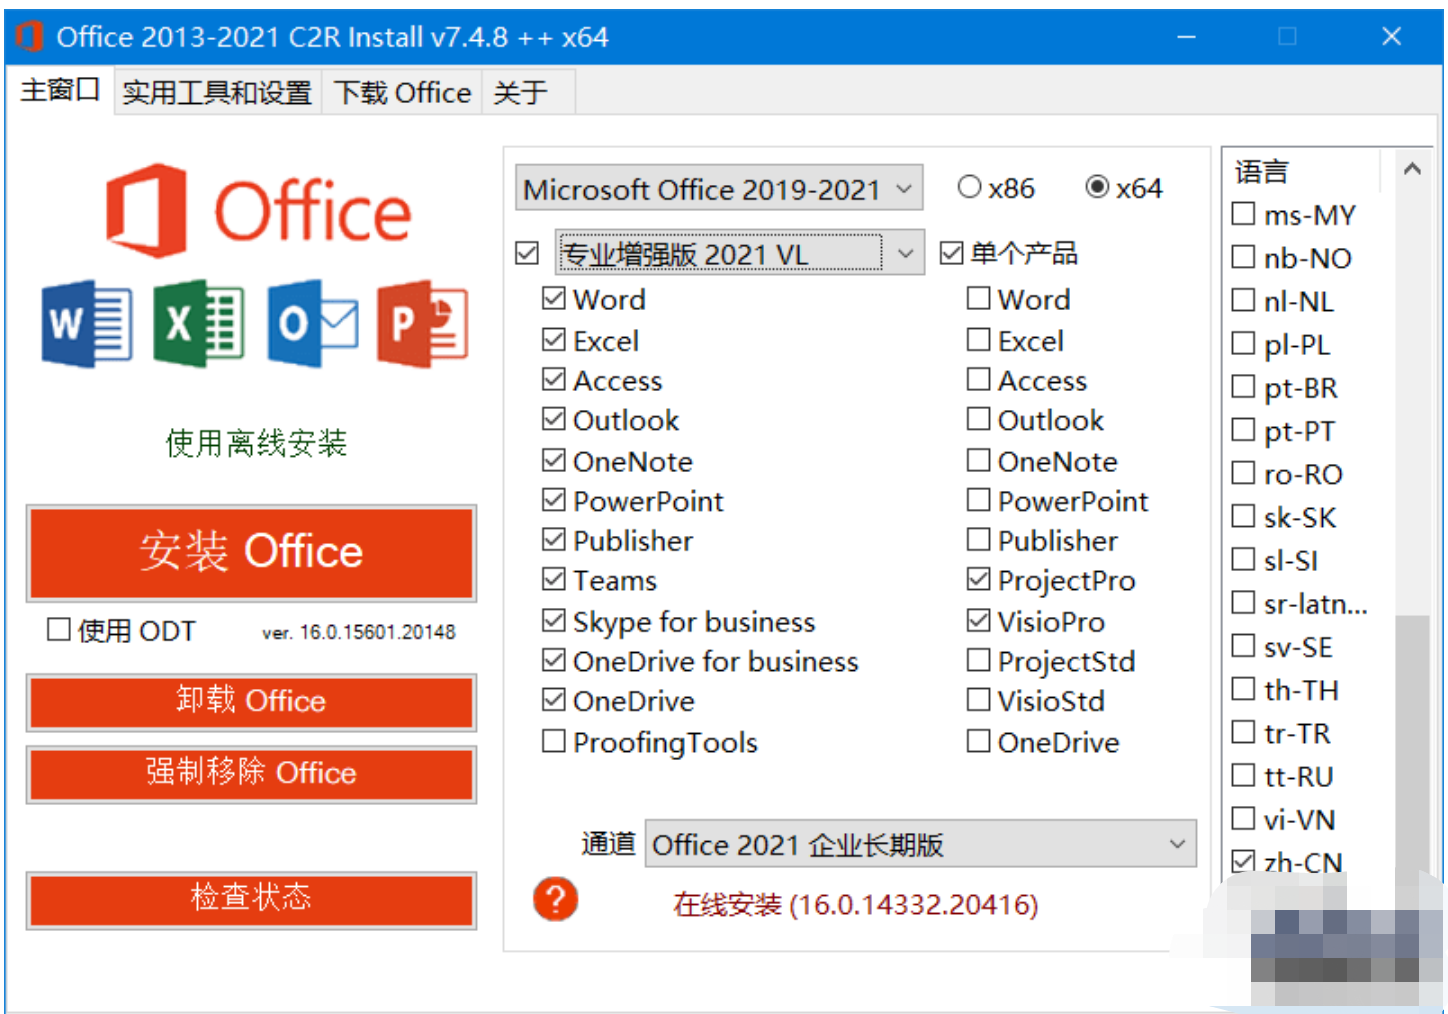 Office 2013-2019 C2R Install中文版